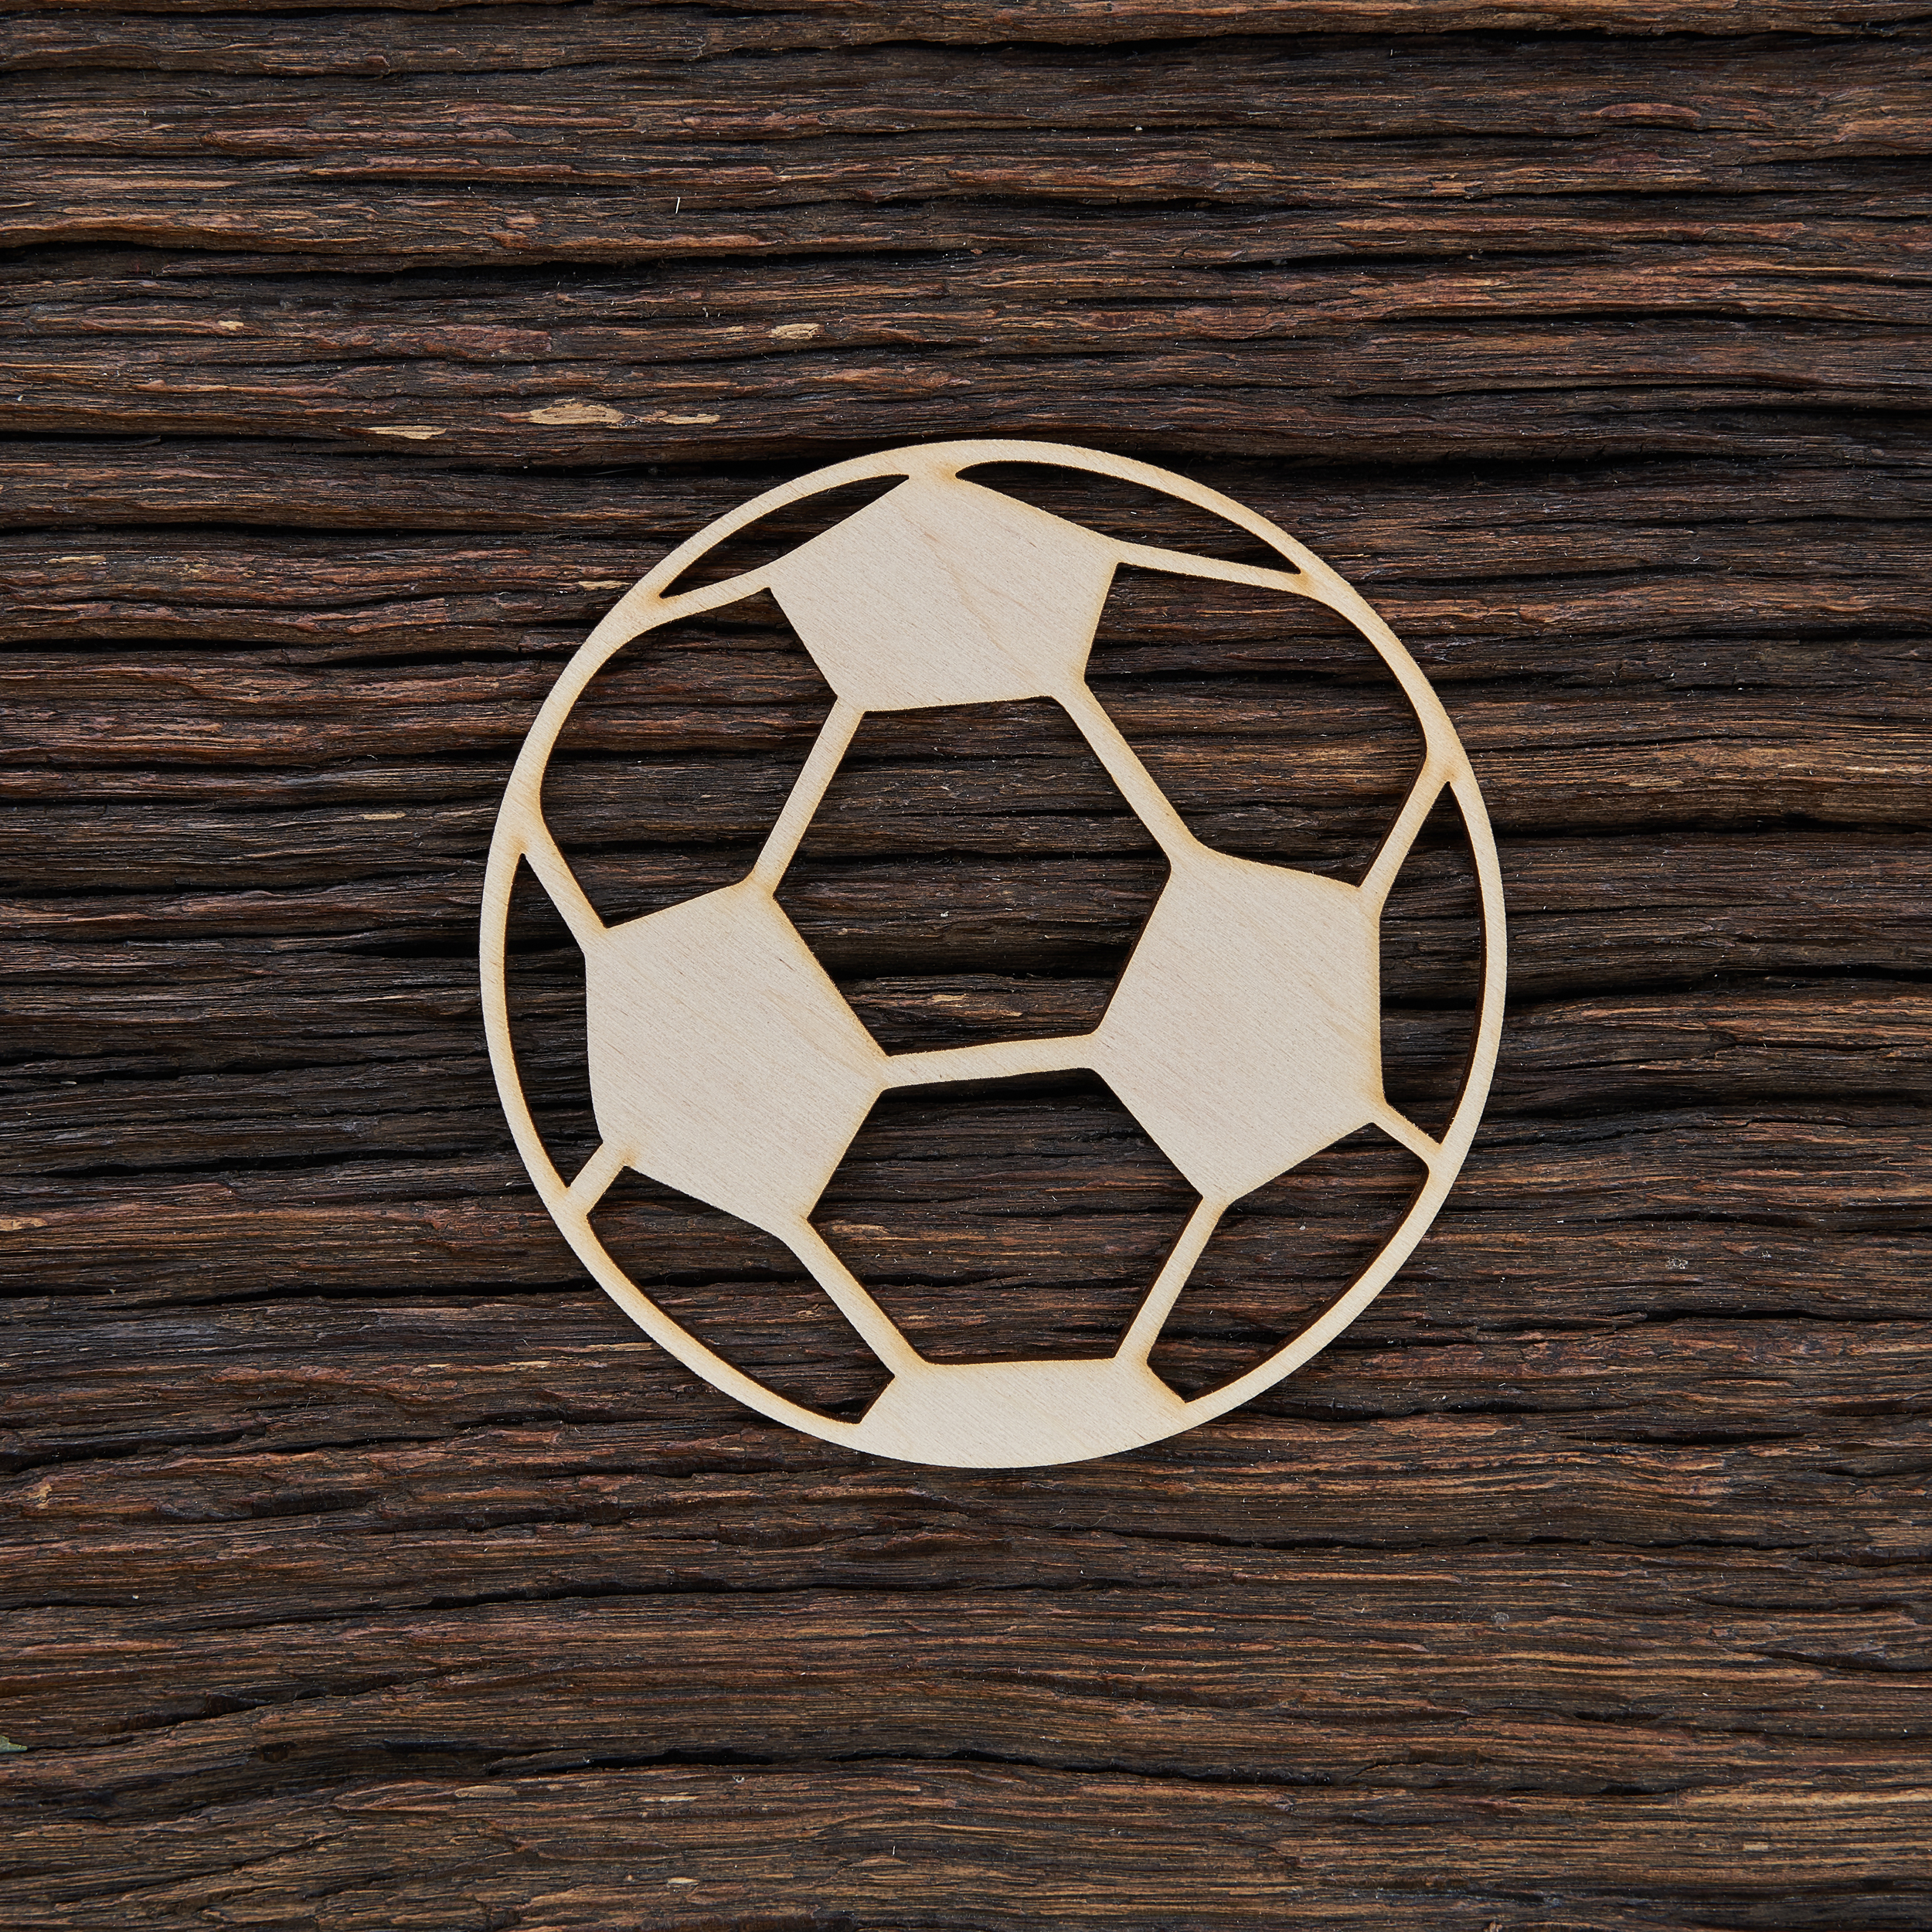 Futbolo kamuolys - medinis gaminys, pjautas lazeriu - dekoravimui ir dažymui 